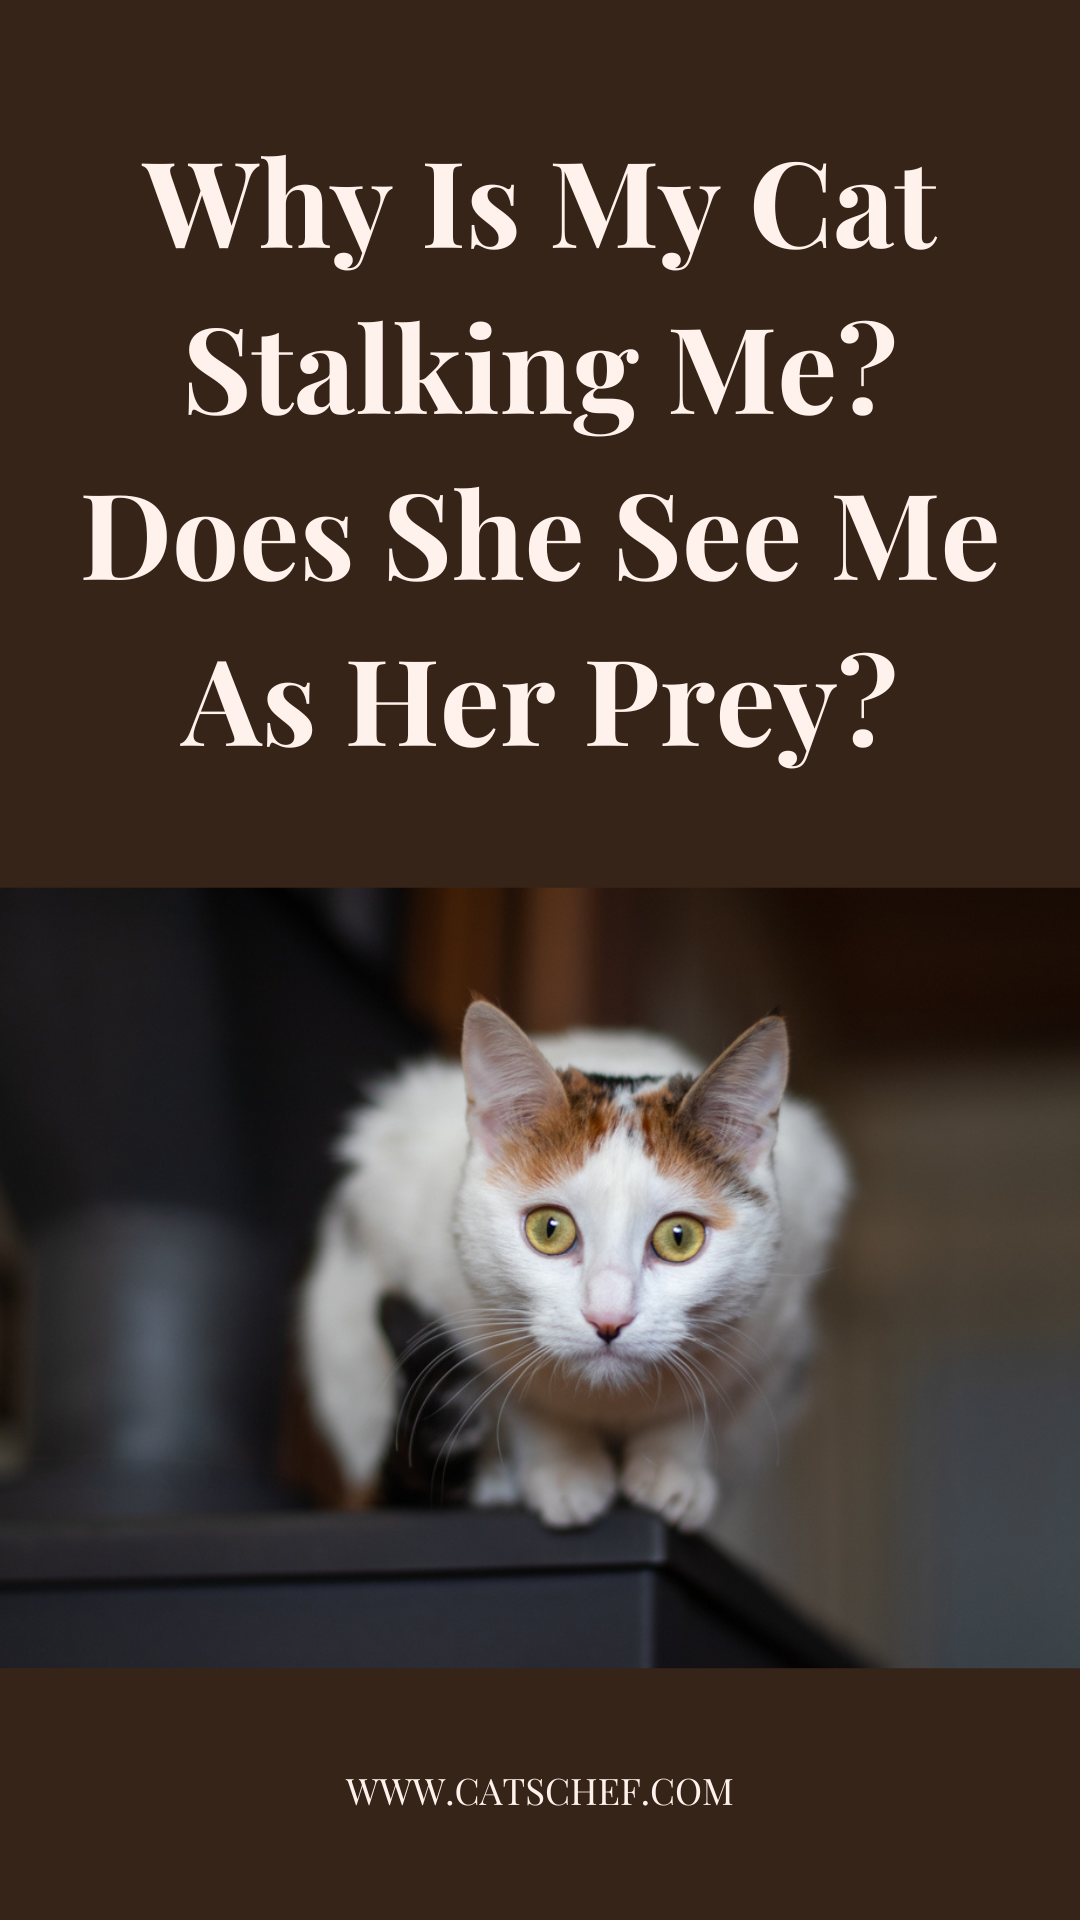 Kedim Neden Beni Takip Ediyor? Beni Avı Olarak mı Görüyor?